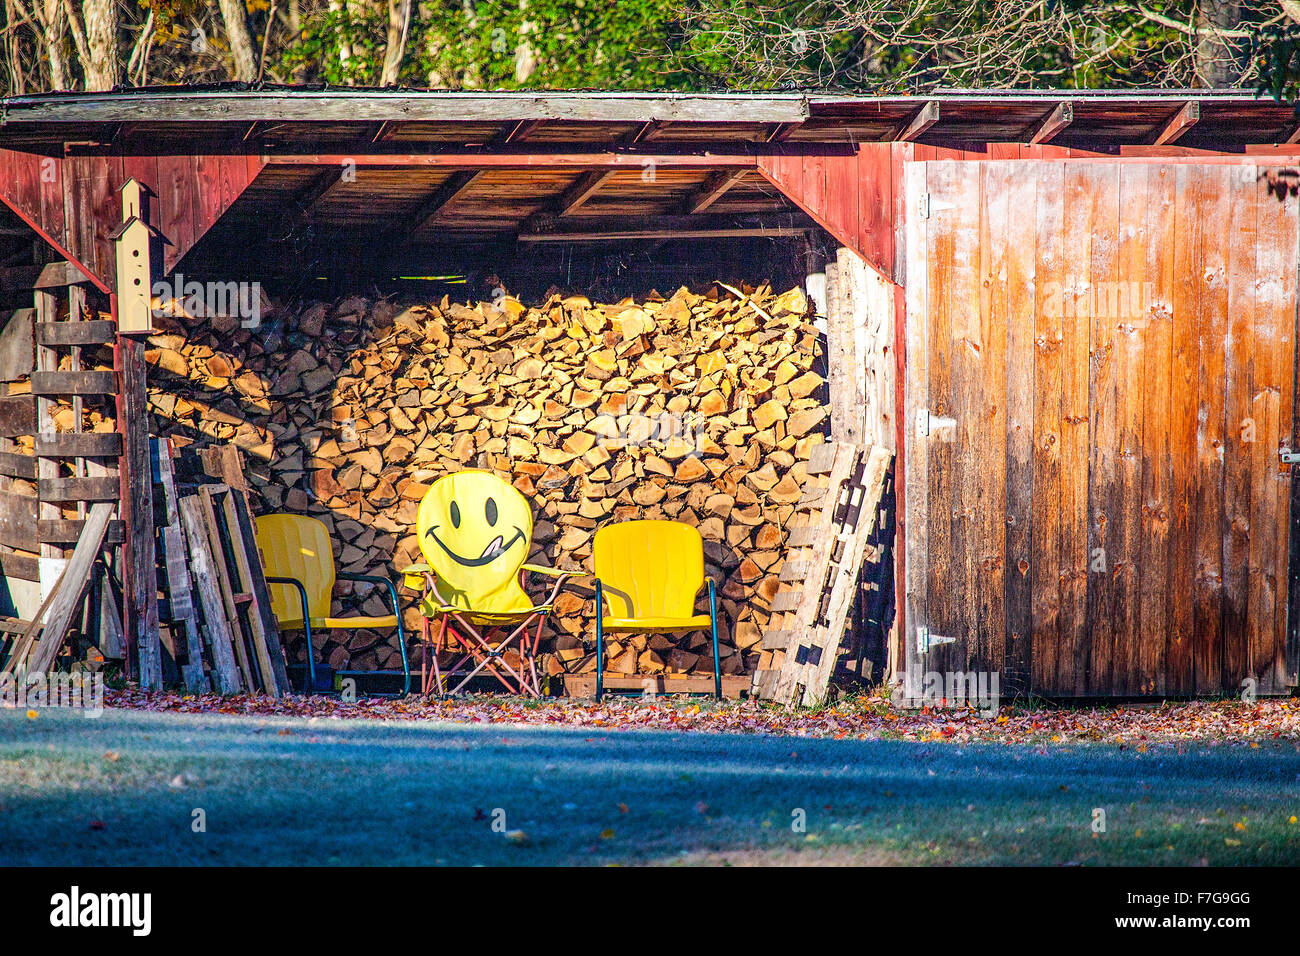 Panorama d'un bûcher dans le New Hampshire, USA avec trois chaises à l'intérieur jaune, l'un a un visage heureux peint emoji sur son dos. Banque D'Images